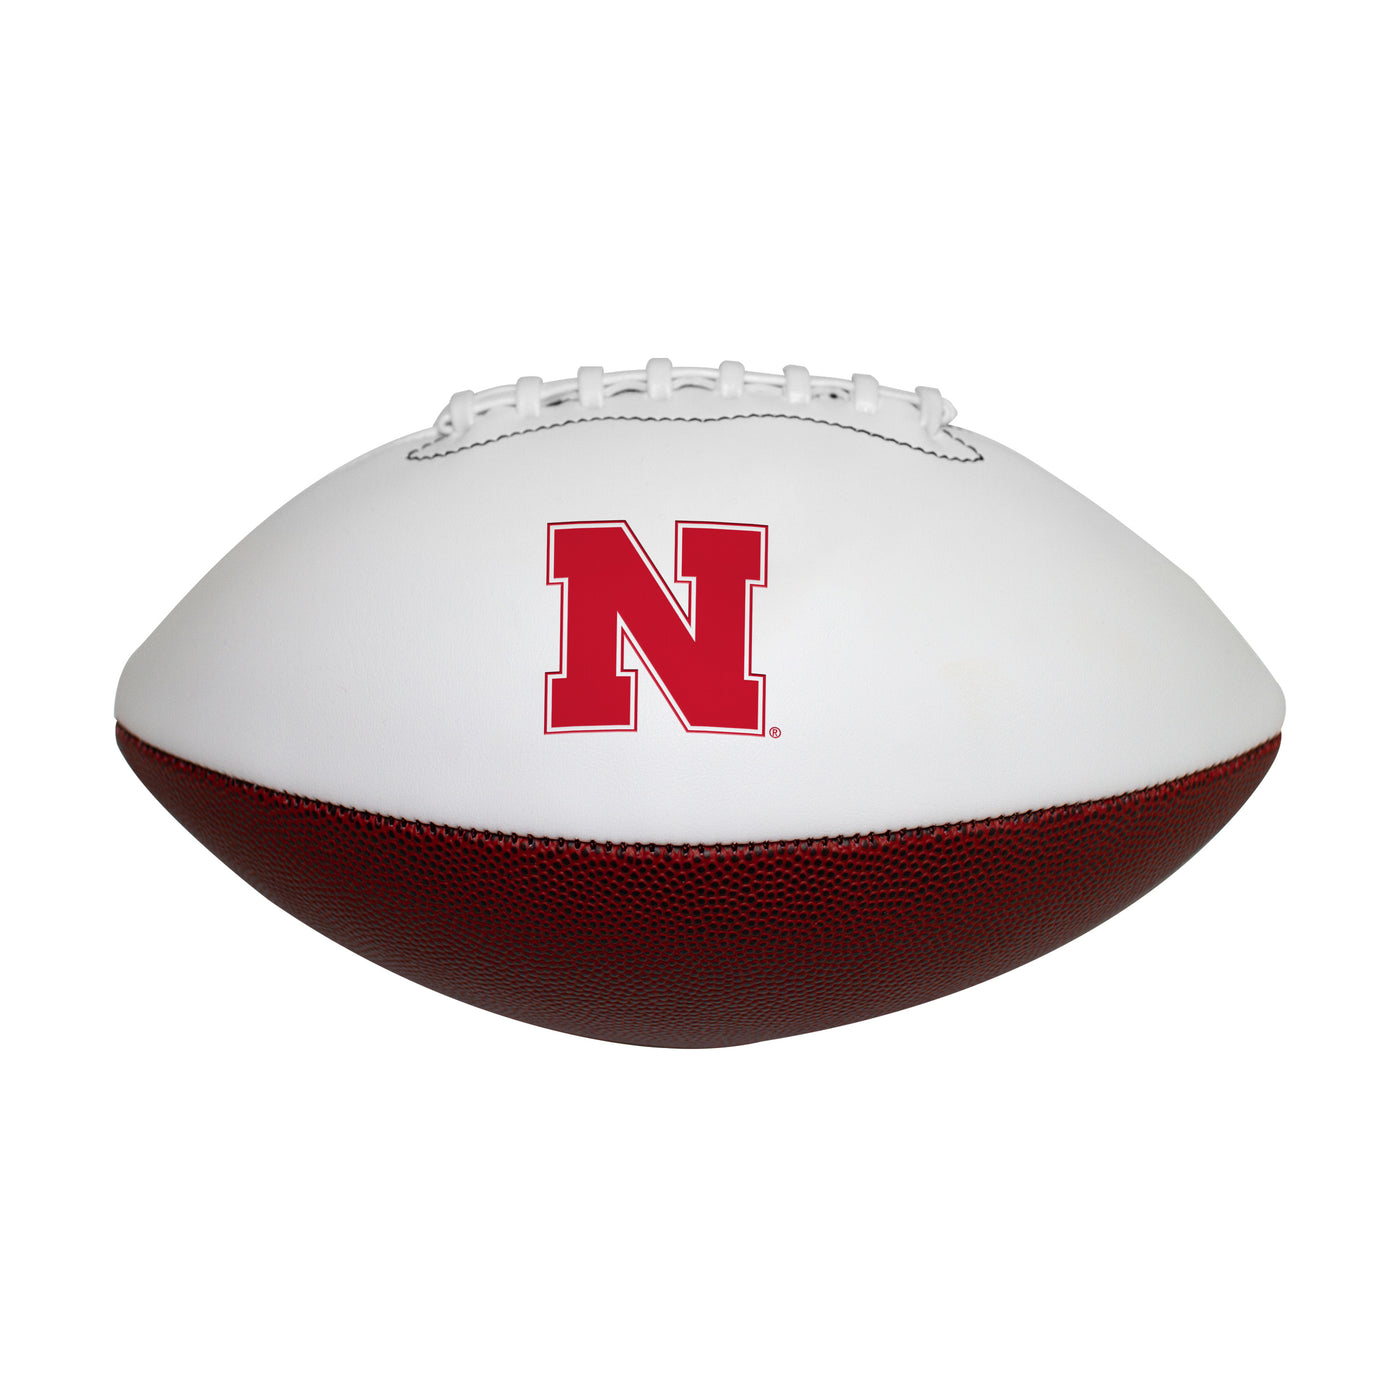 Nebraska Official-Size Autograph Football